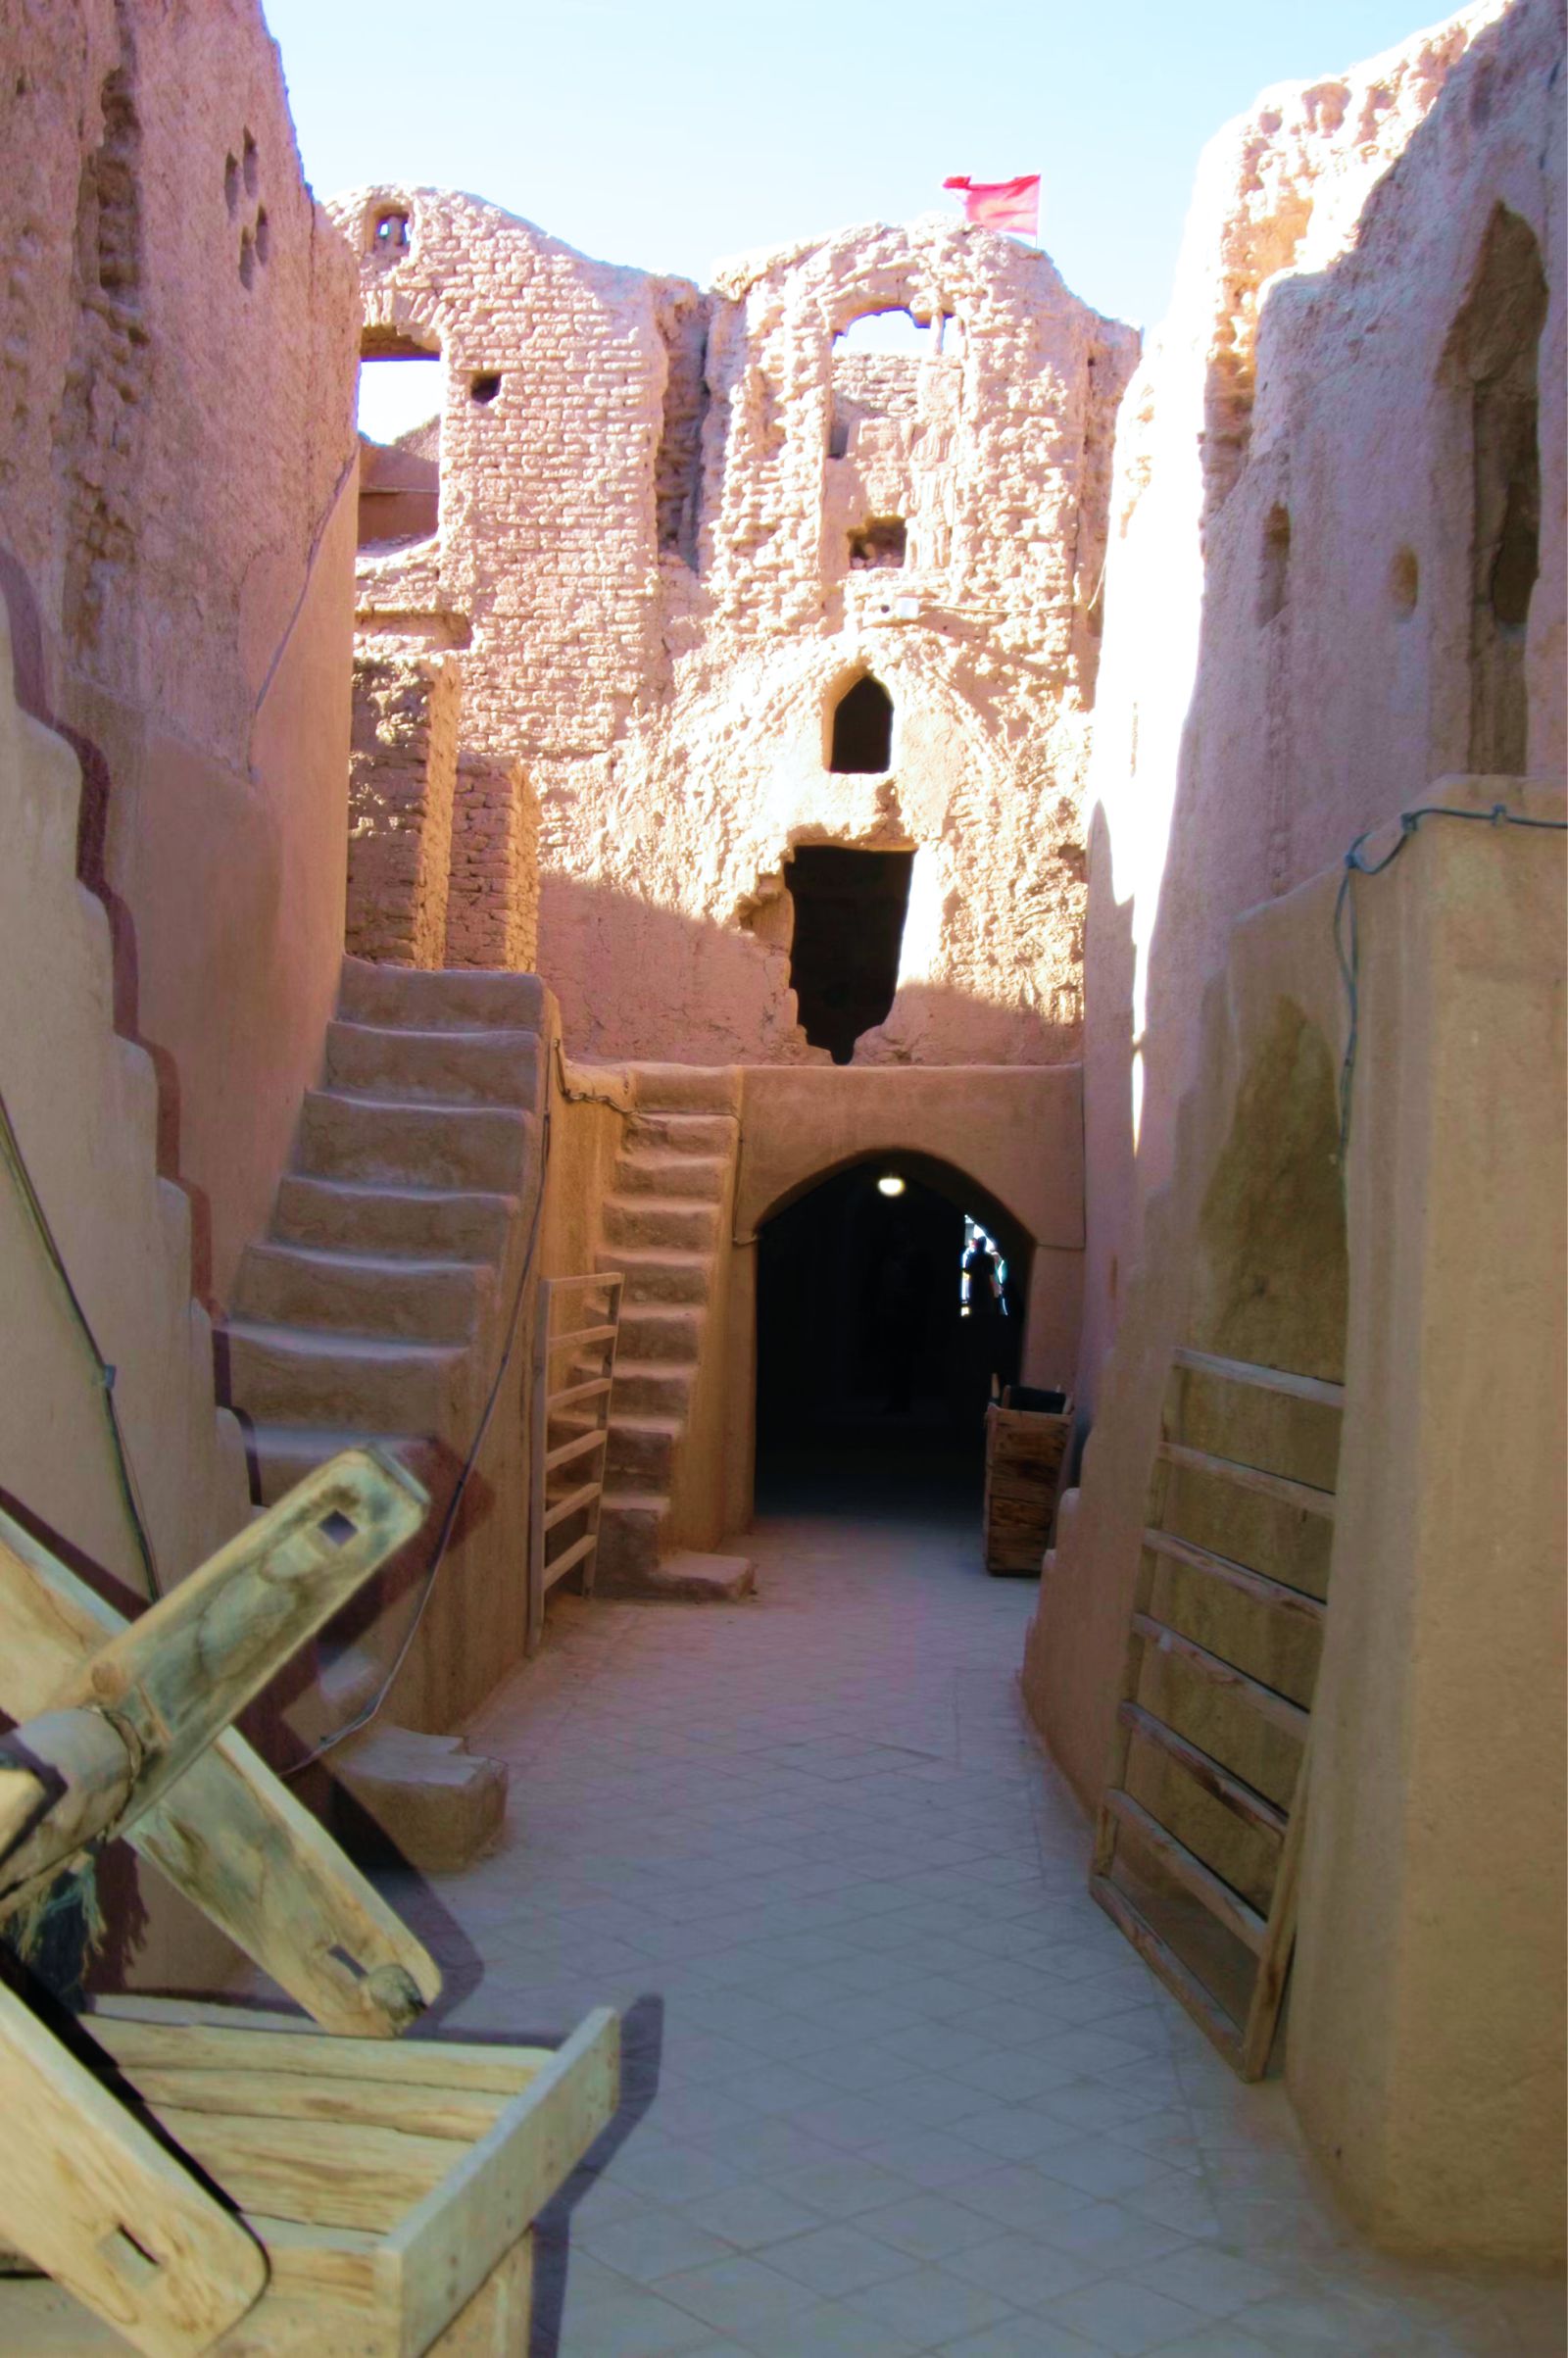  Tháp đón gió - tuyệt tác kiến trúc của thành phố sa mạc Yazd  - Ảnh 7.